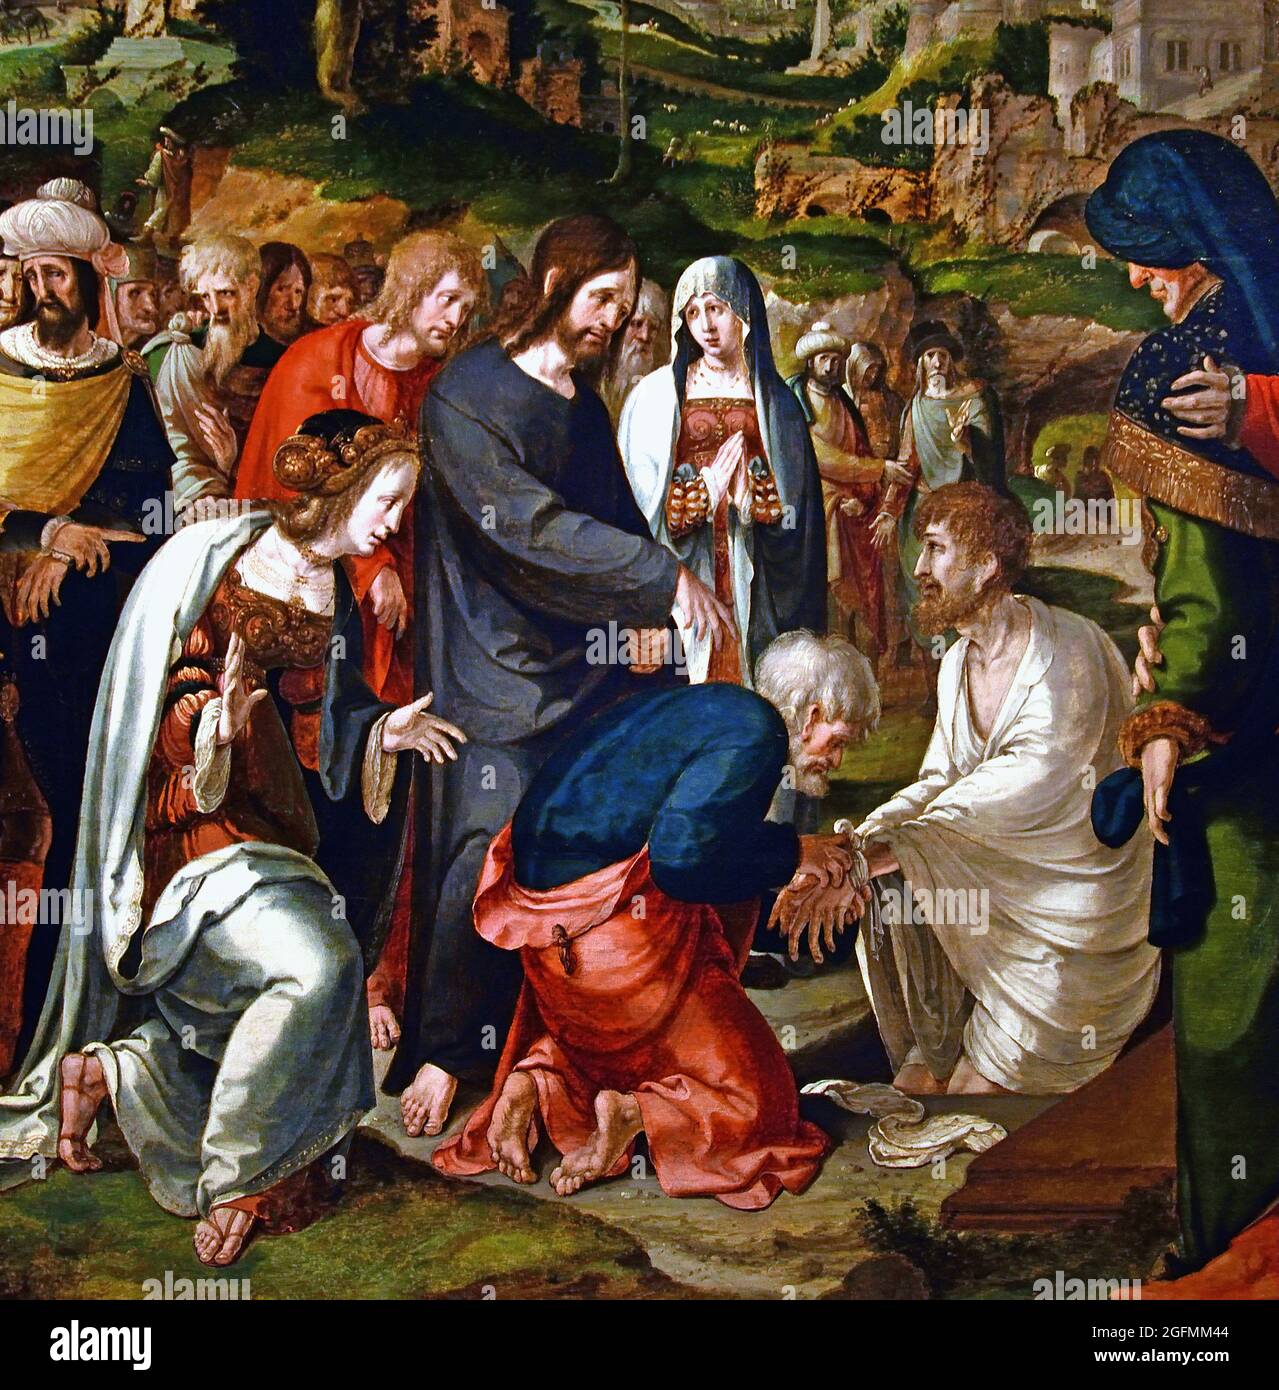 Die Auferweckung des Lazarus, Aertgen Claesz van Leyden (zugeschrieben), 1530 -1535 Öl auf Tafel, 75,7cm × 78,8cm (Dieses Triptychon wurde zum Gedenken an ein Ehepaar gemalt, wobei der Mann und die Frau auf den Flügeln knieend dargestellt wurden. Die zentrale Tafel zeigt passend das Wunder, dass Christus Lazarus von den Toten auferweckt hat, eine Anspielung auf die Verheißung des ewigen Lebens und den Glauben, dass der Tod durch den Glauben an Christus überwunden wird.) Stockfoto